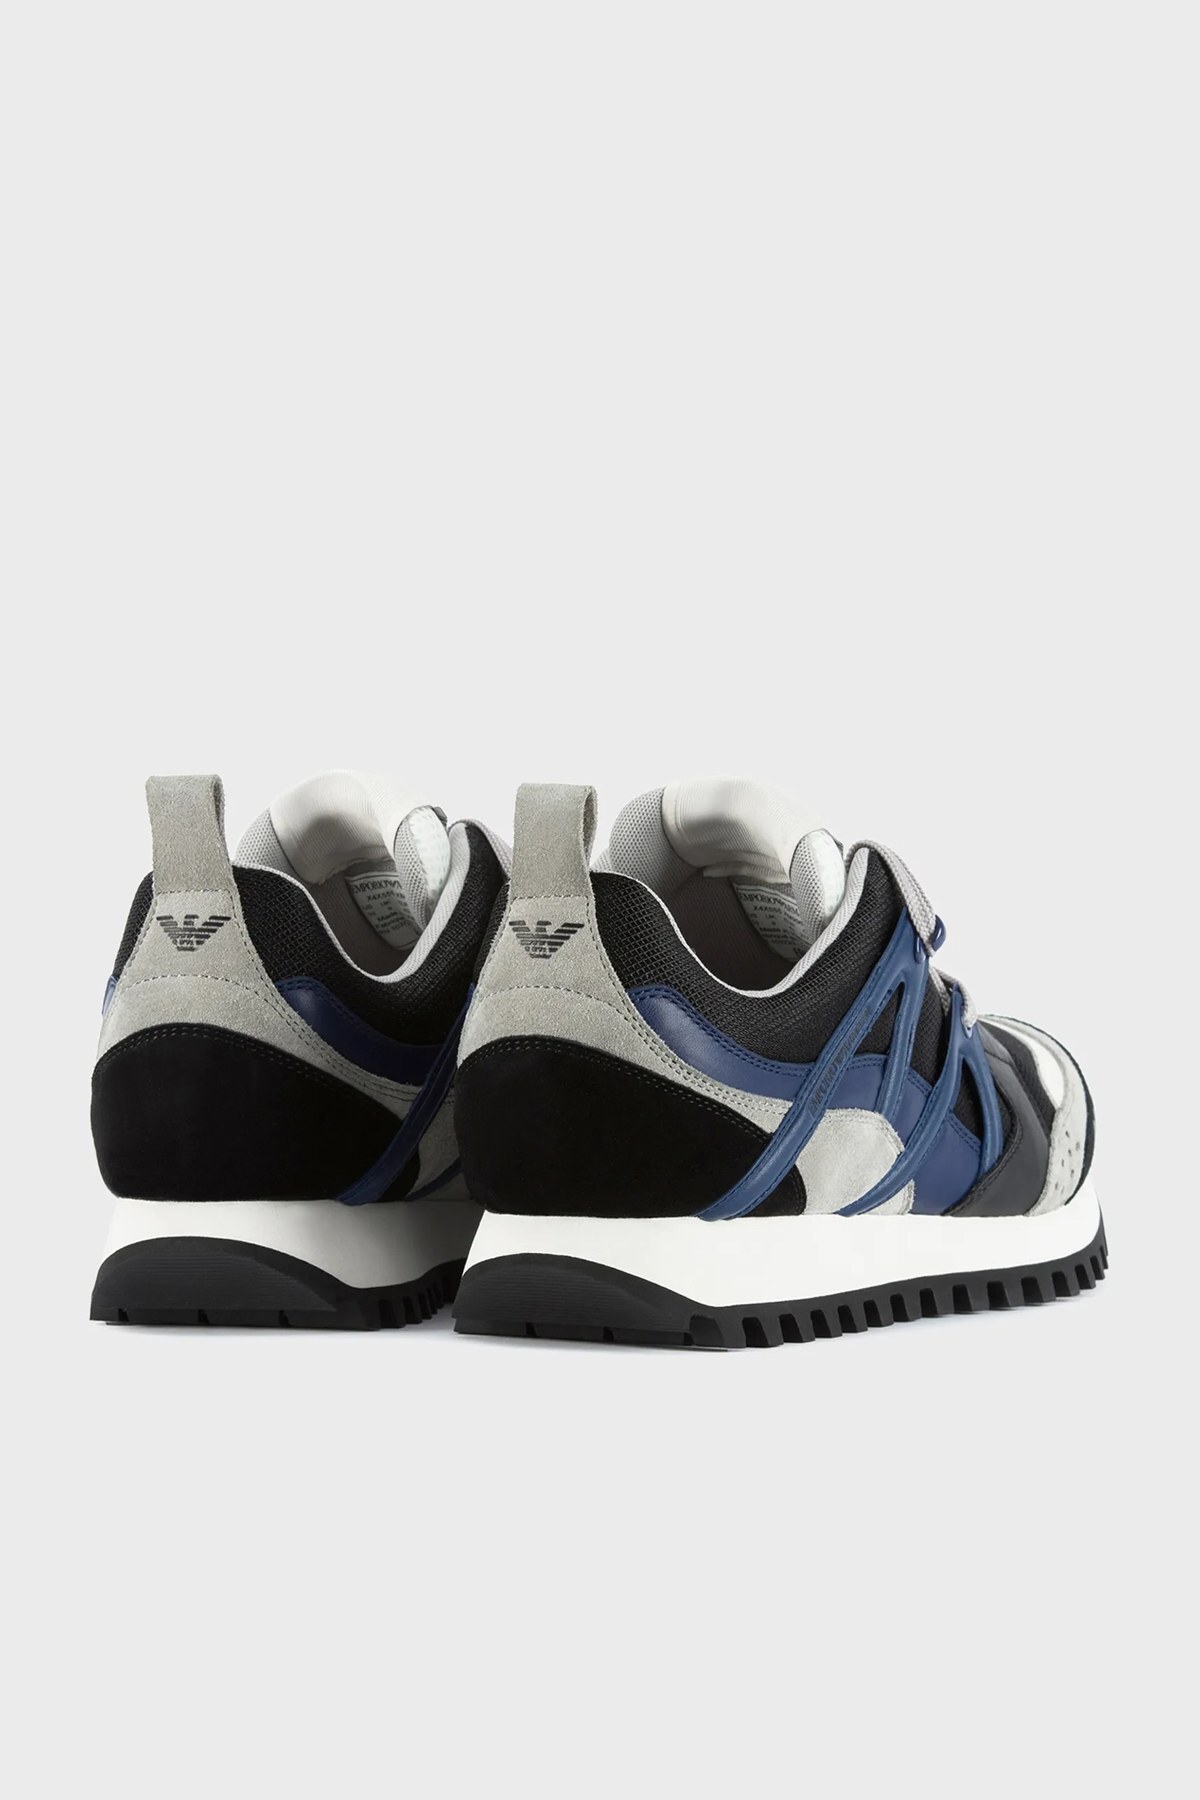 Emporio Armani Logolu Bağcıklı Hakiki Deri Sneaker Erkek Ayakkabı X4X555 XM996 Q841 SİYAH-LACİVERT